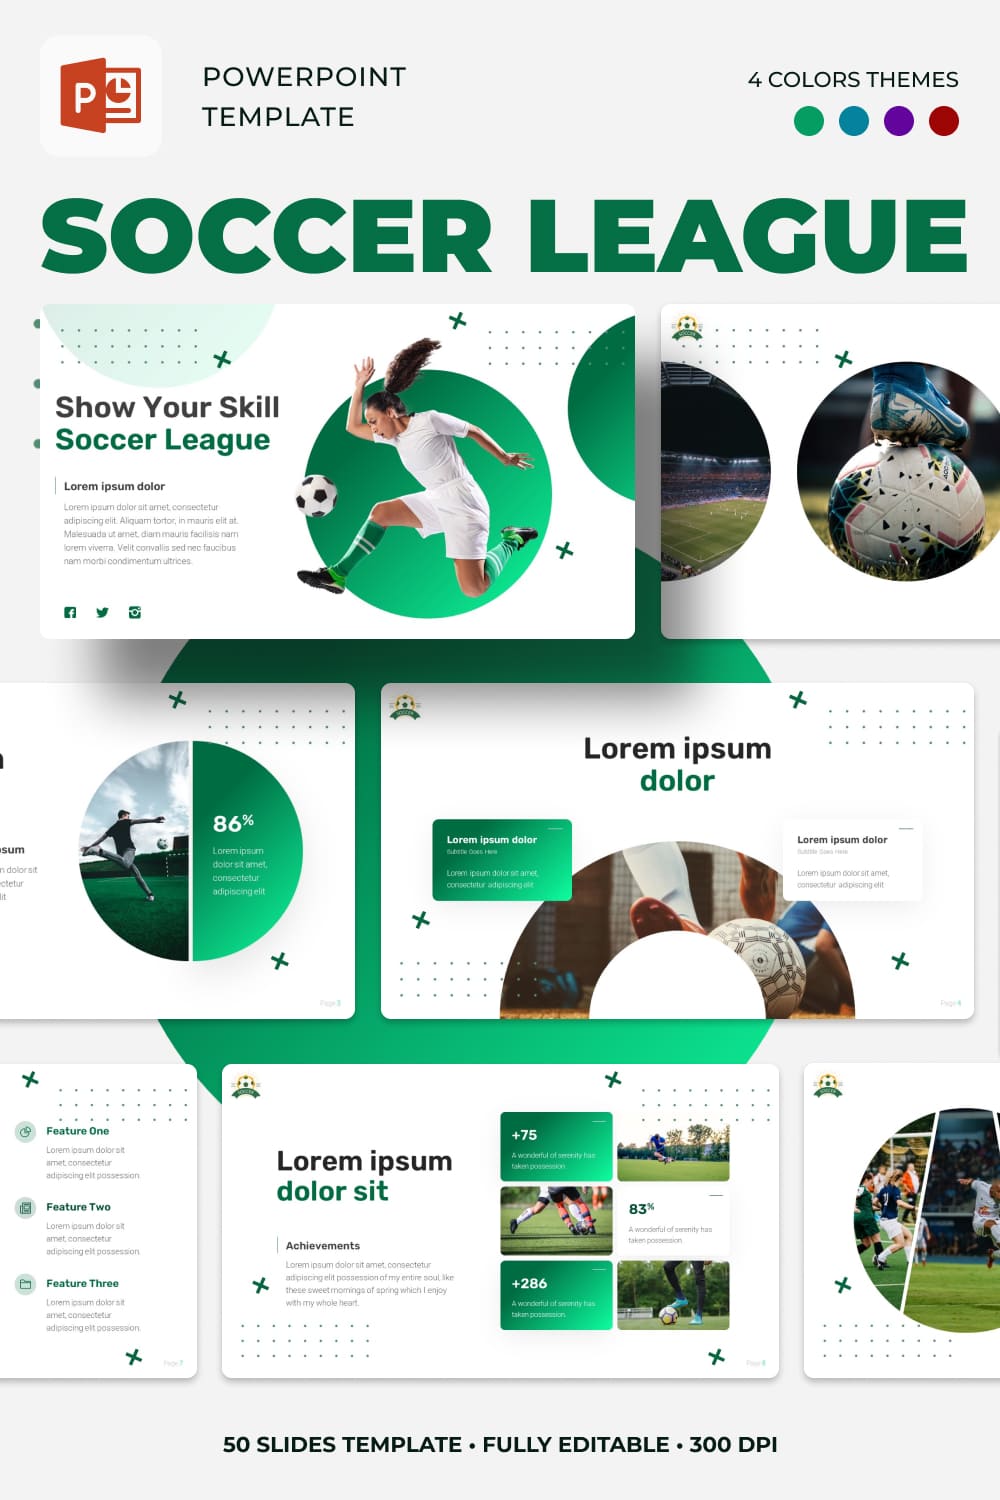 Soccer League Powerpoint Template - Pinterest.